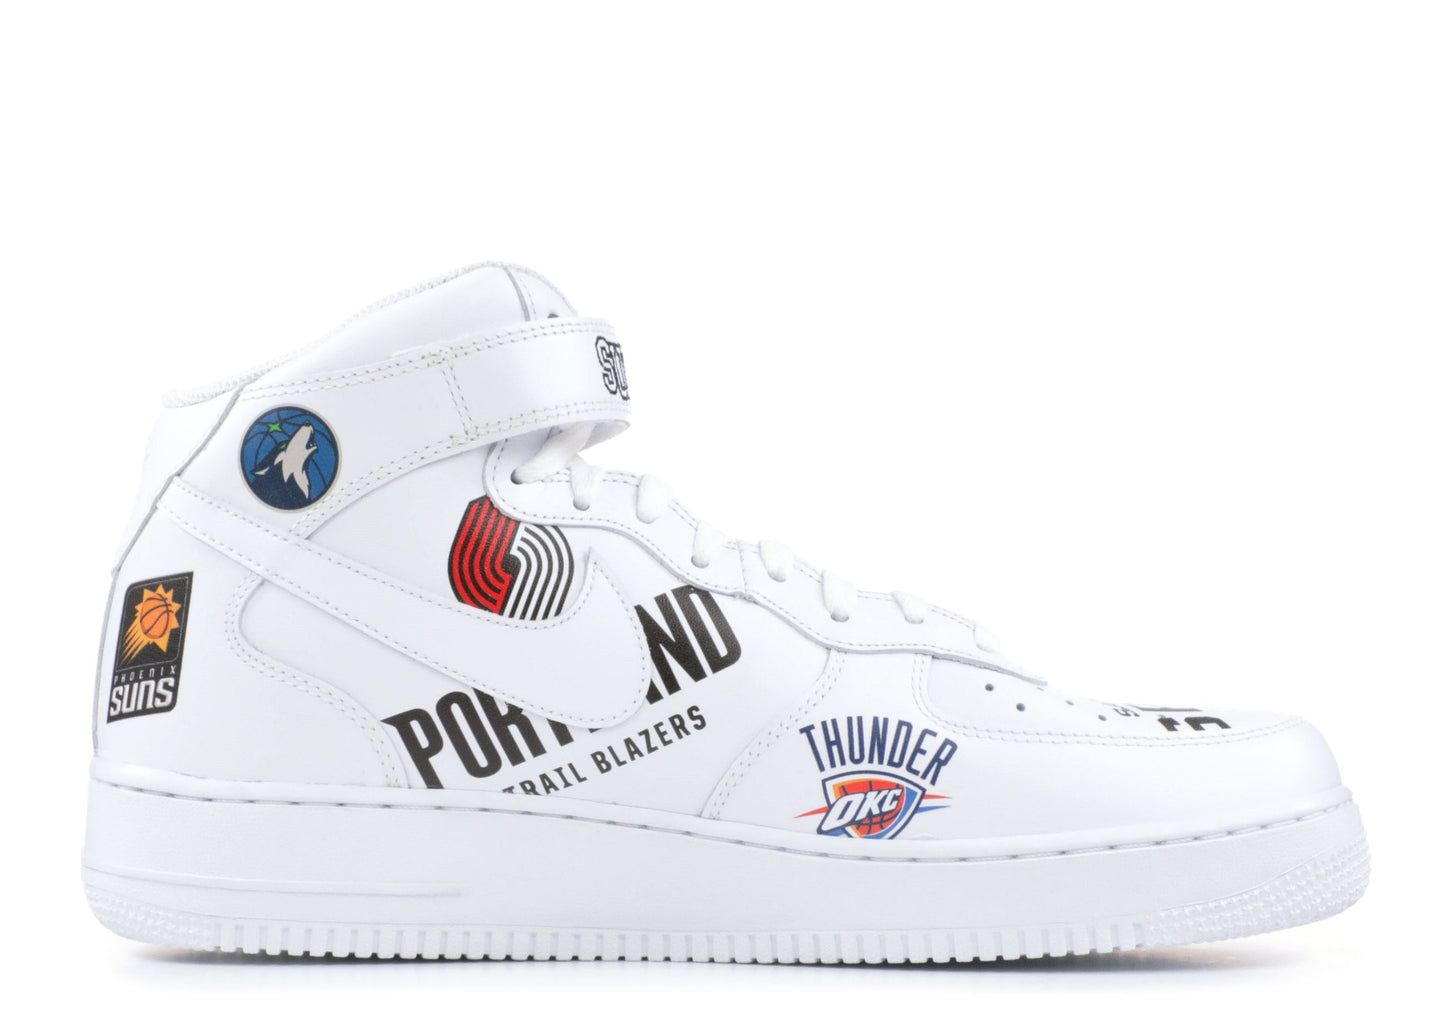 Supreme x NBA x Nike Air Force 1 Mid "White"